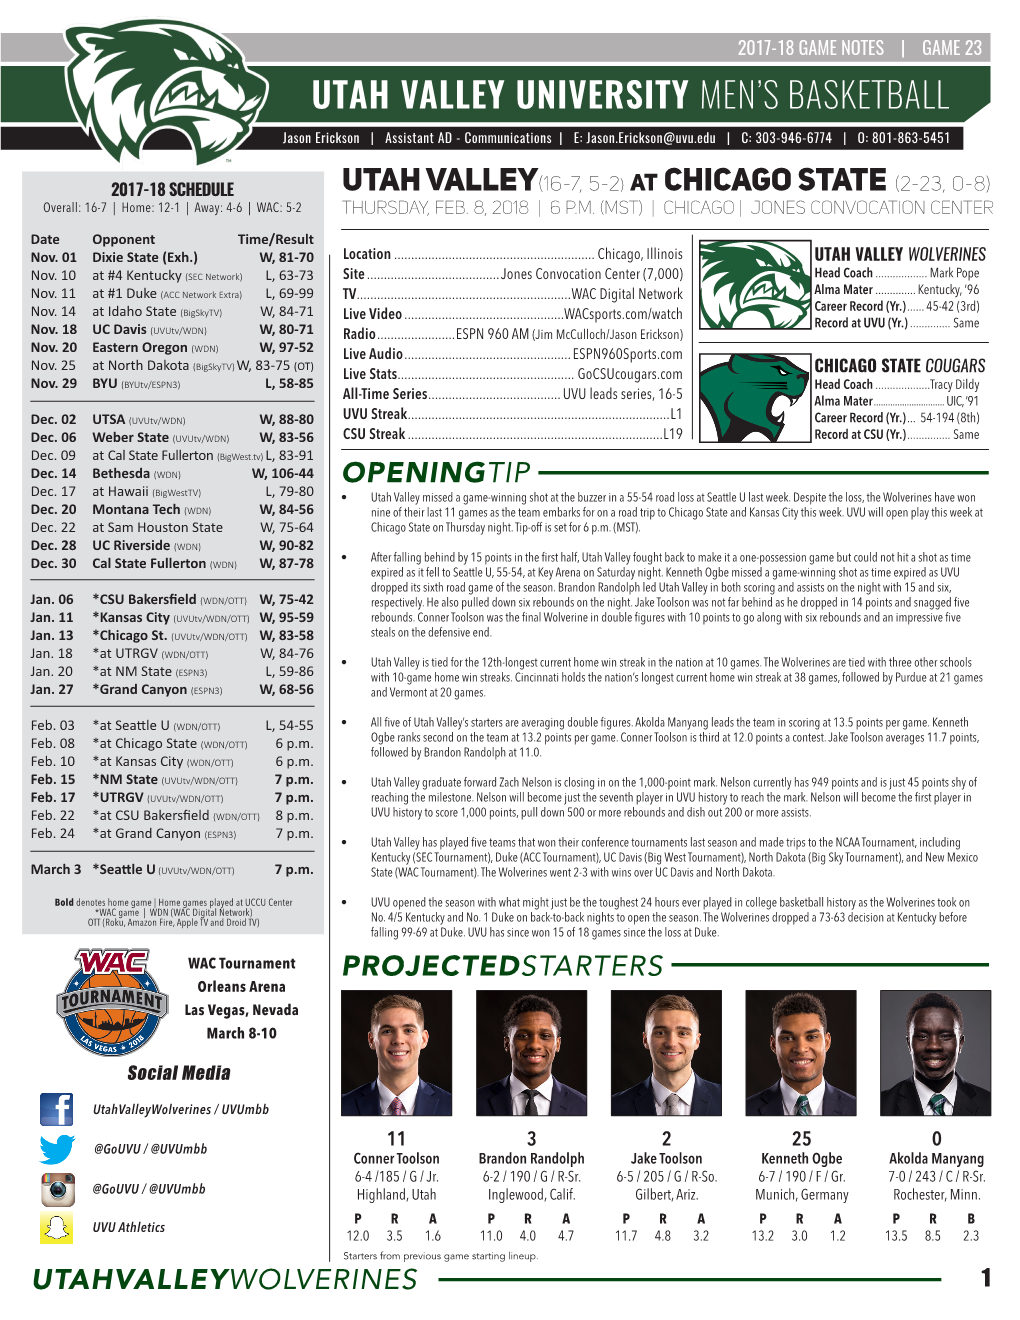 Utah Valley University Men's Basketball